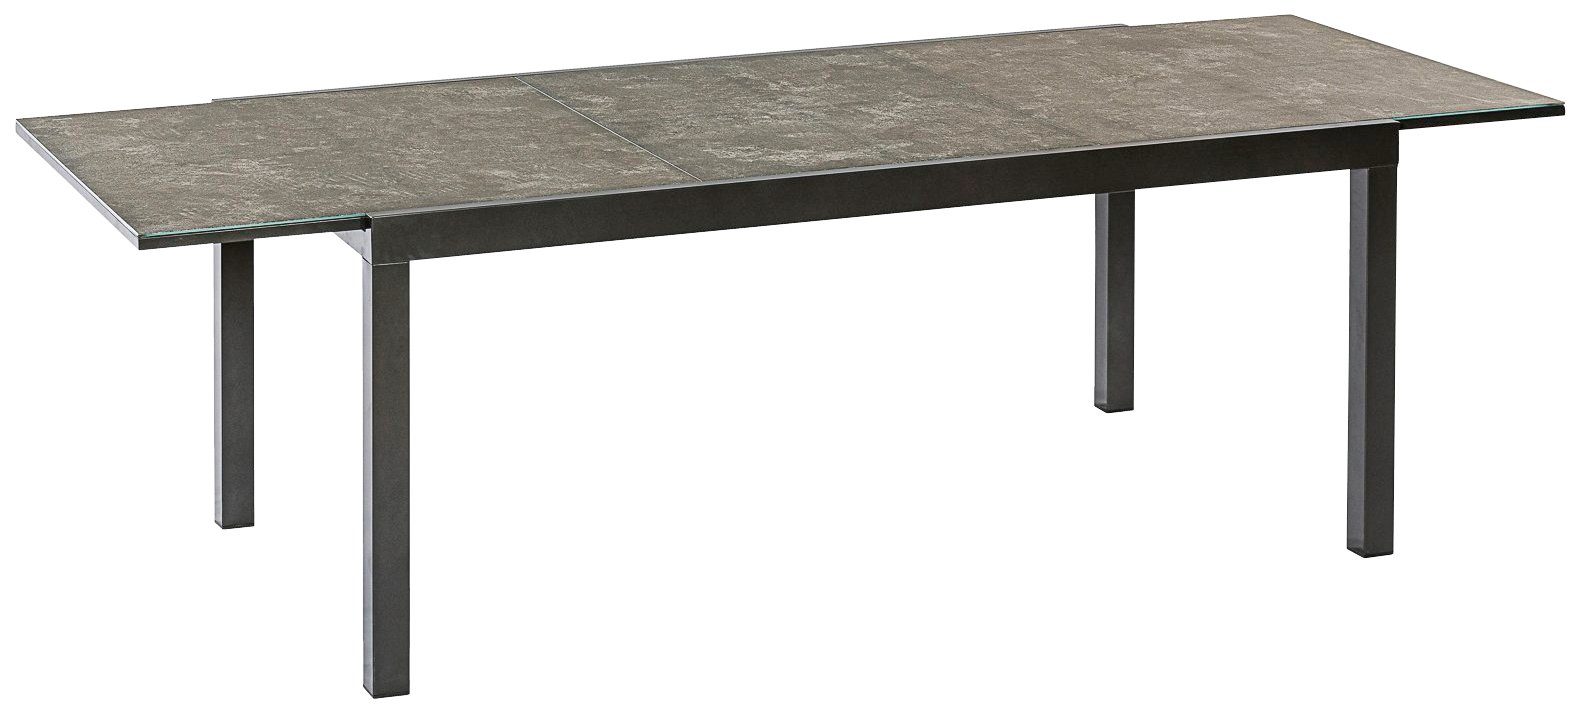 Semi MERXX Gartentisch 100x180 AZ-Tisch, cm